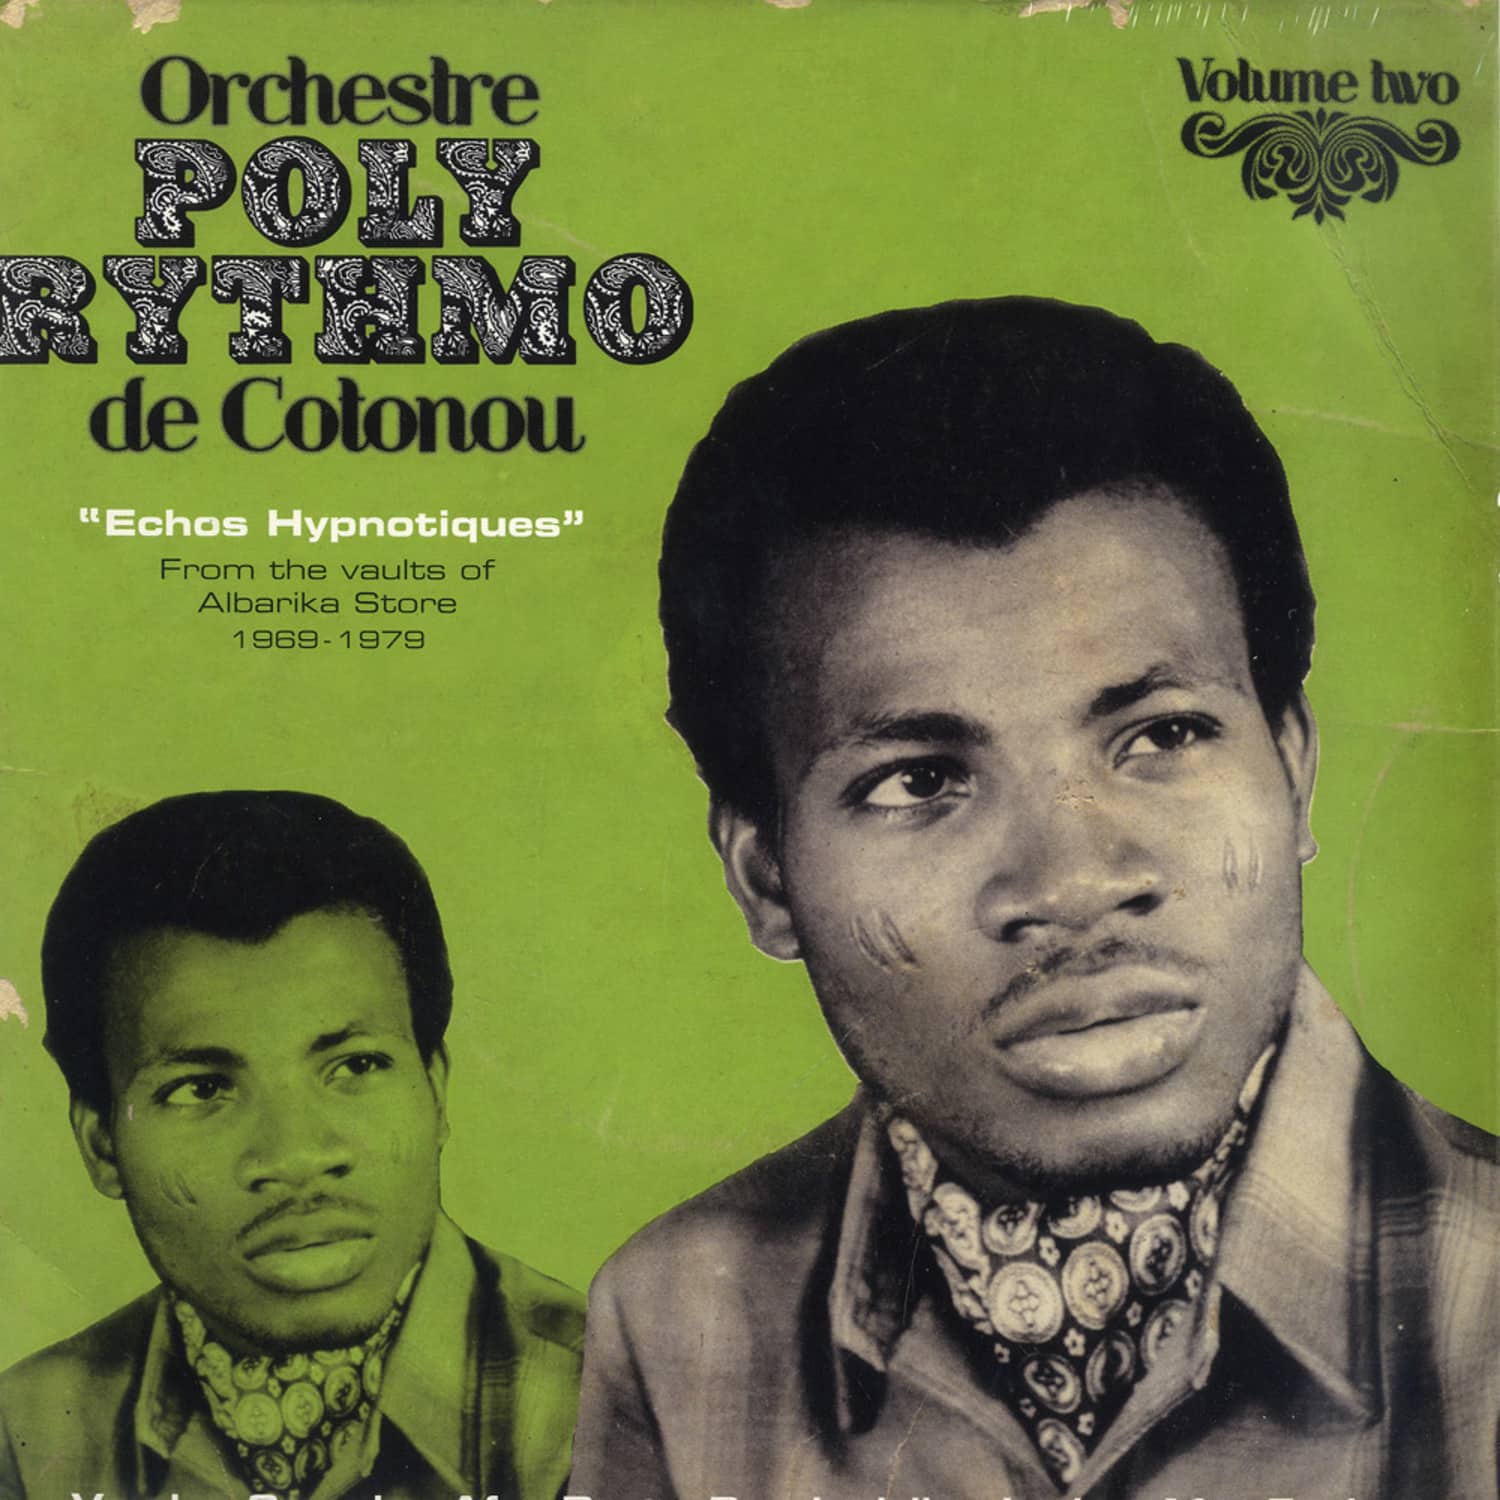 Orchestre Poly-Rythmo De Cotonou - ECHOS HYPNOTIQUES 